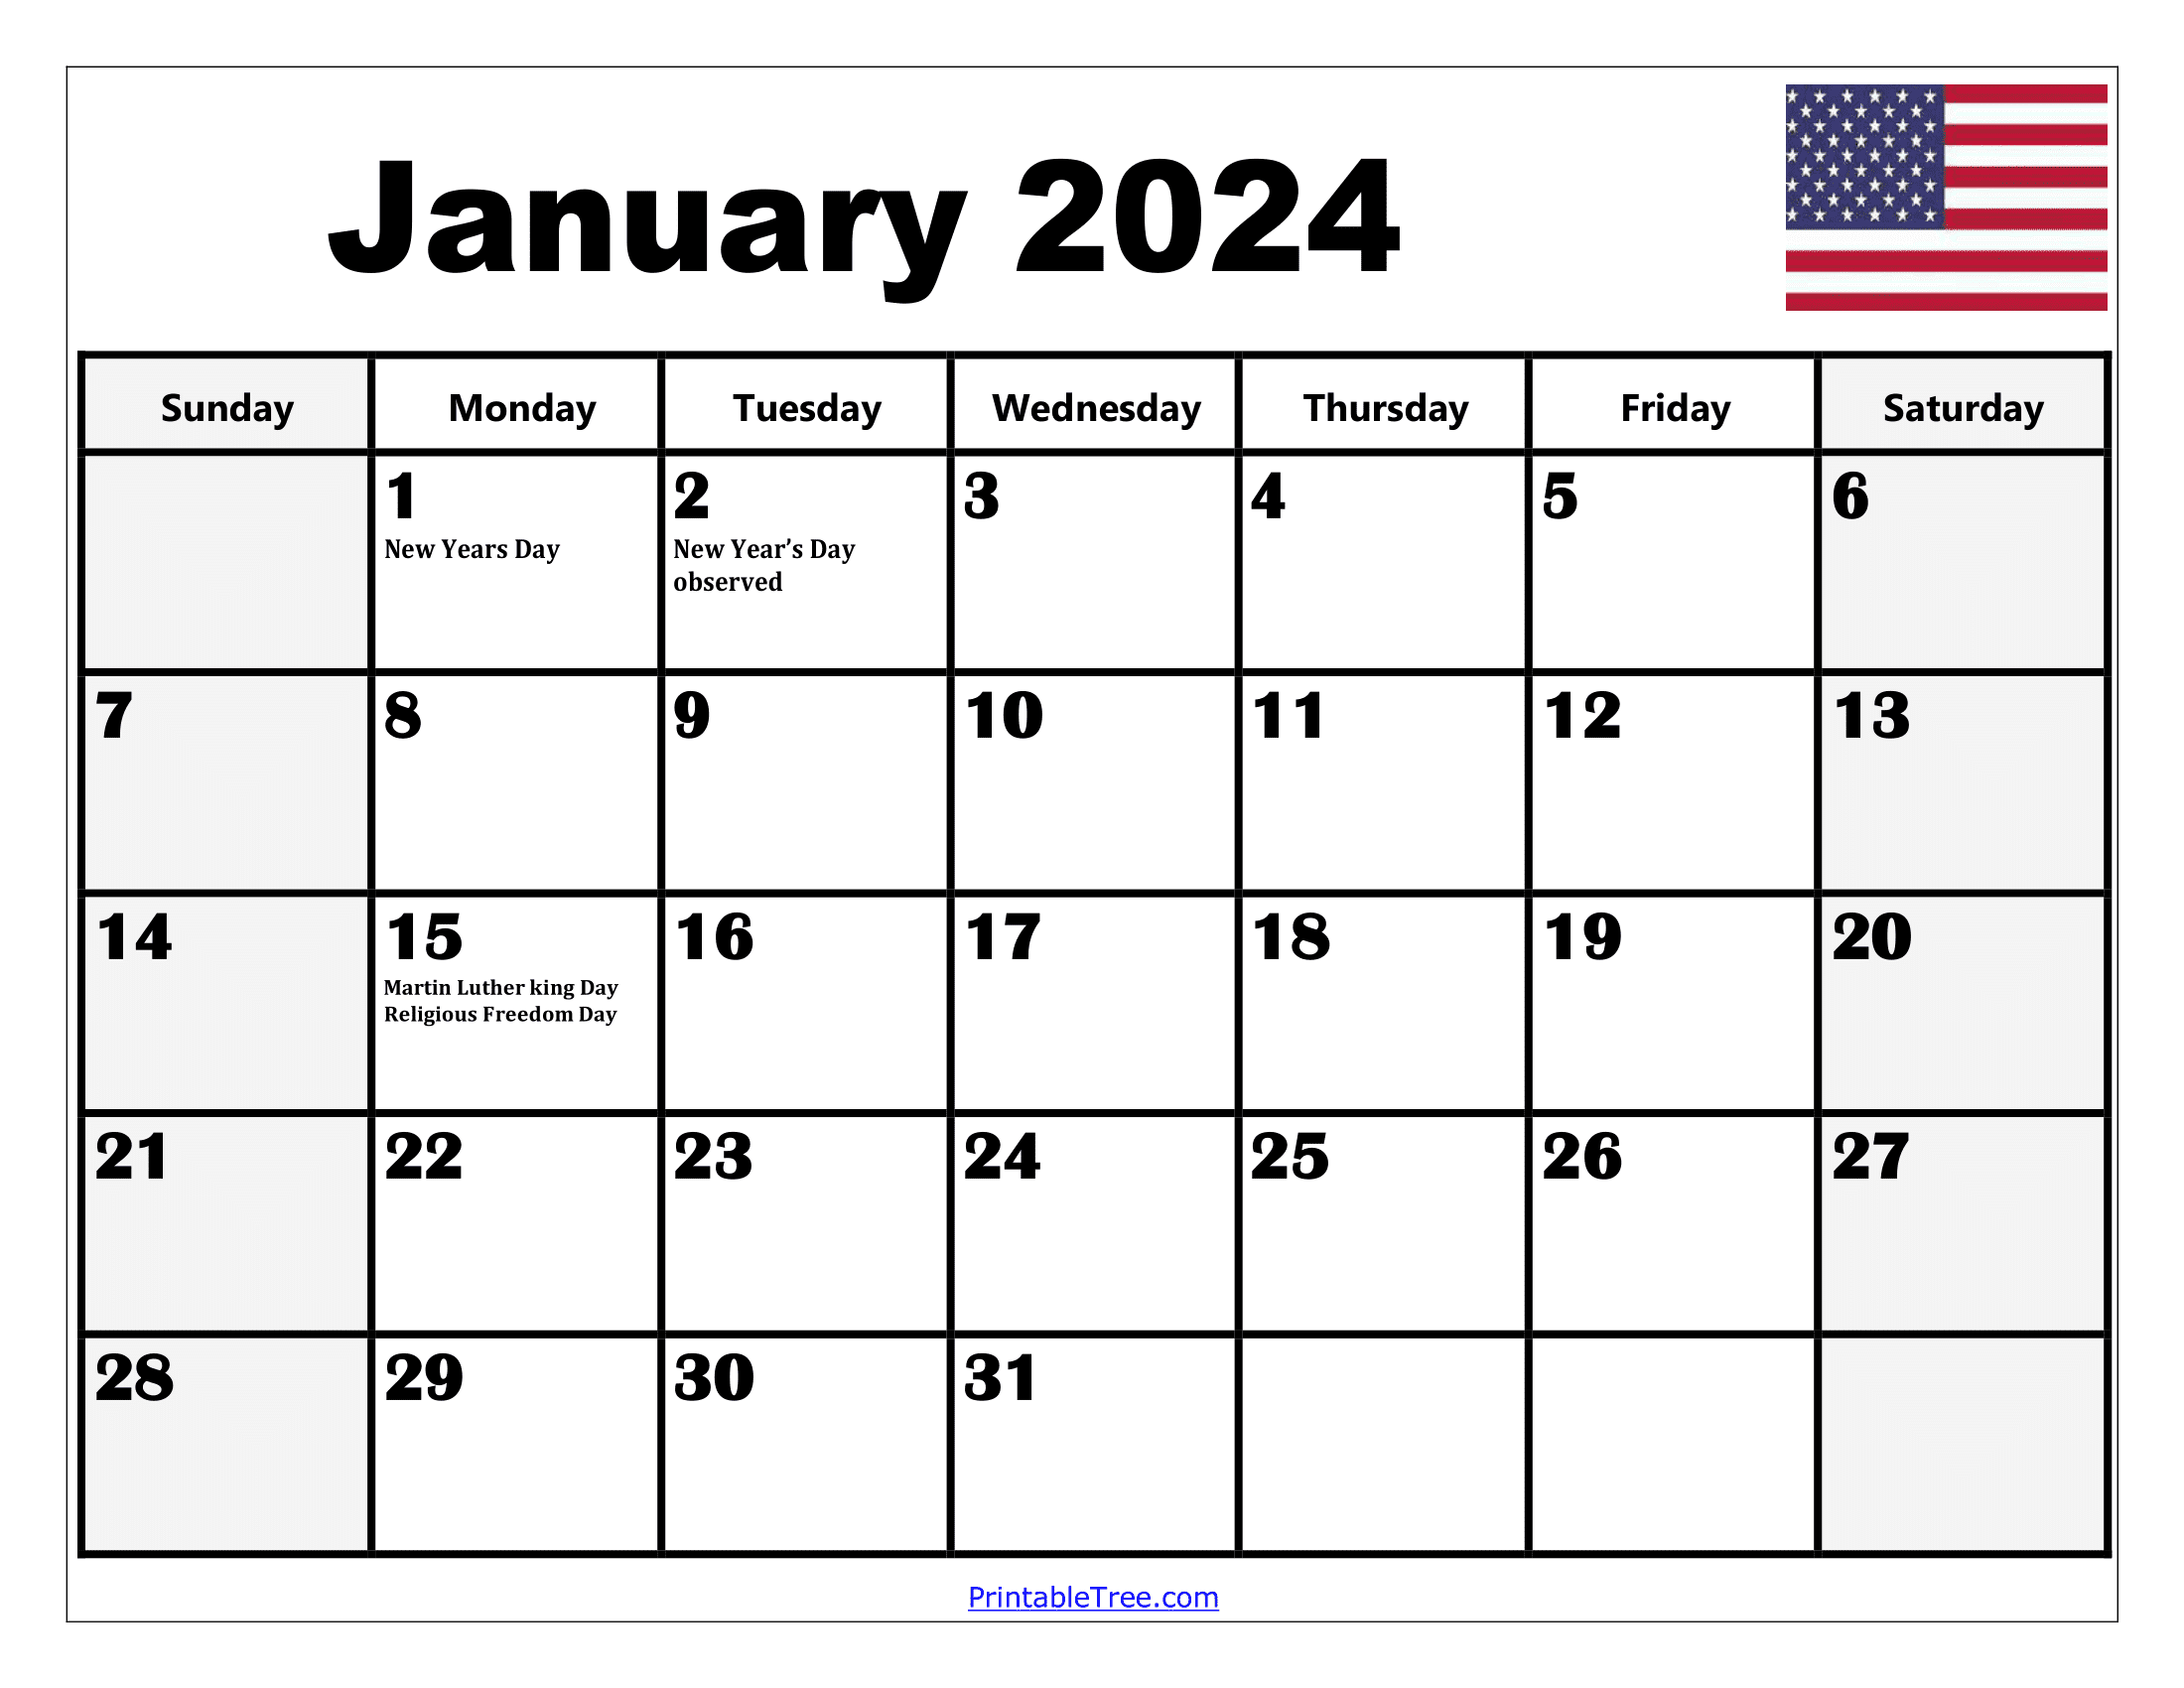 2024 Holiday Calendar Days Free Download Nov 2024 Calendar - Free Printable 2024 Calendar With Holidays Download